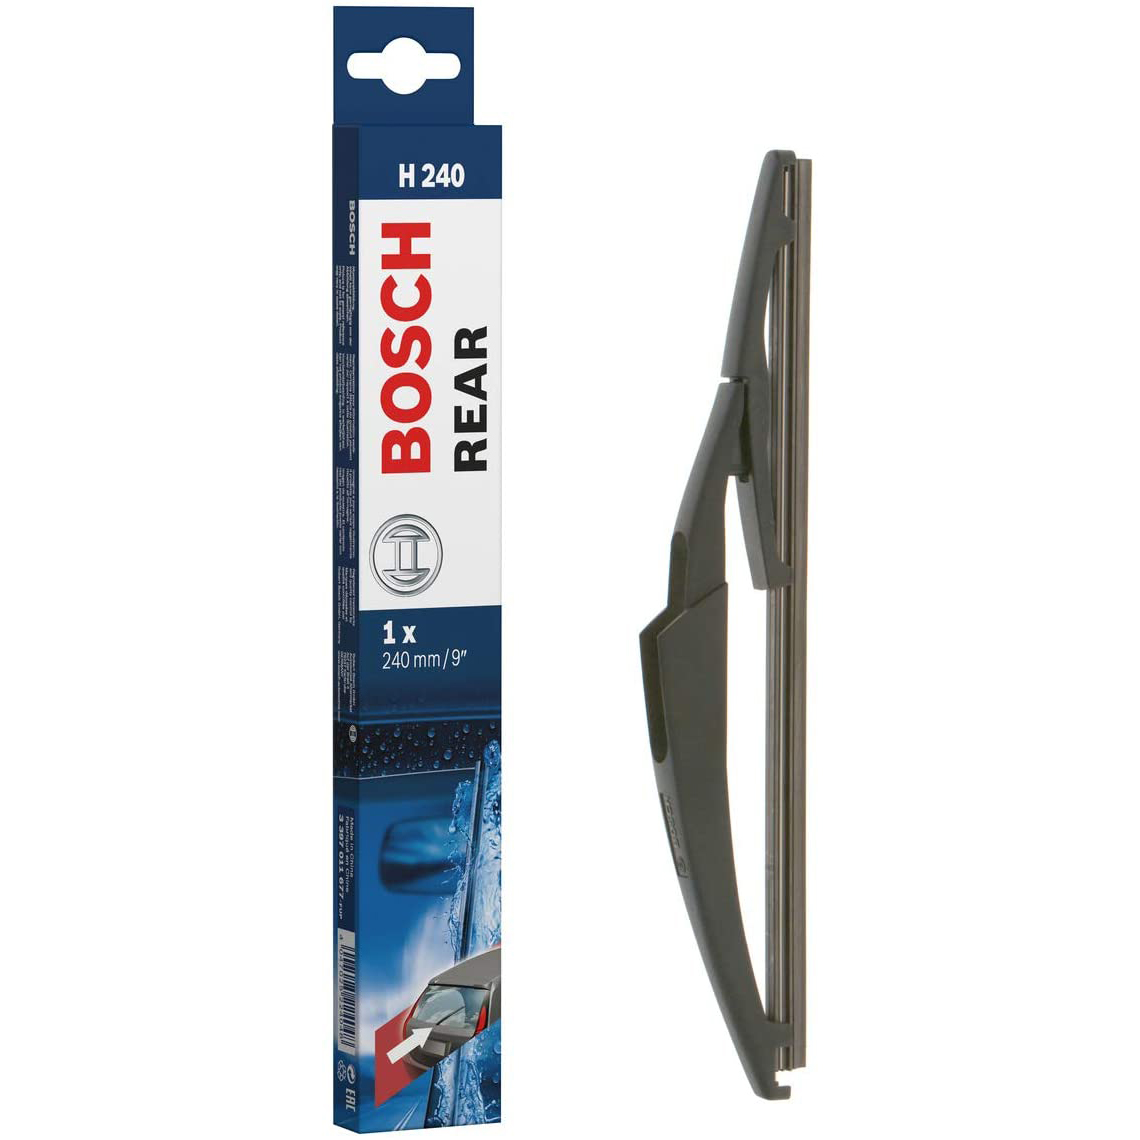 Bosch Wiper Blades Customer Service